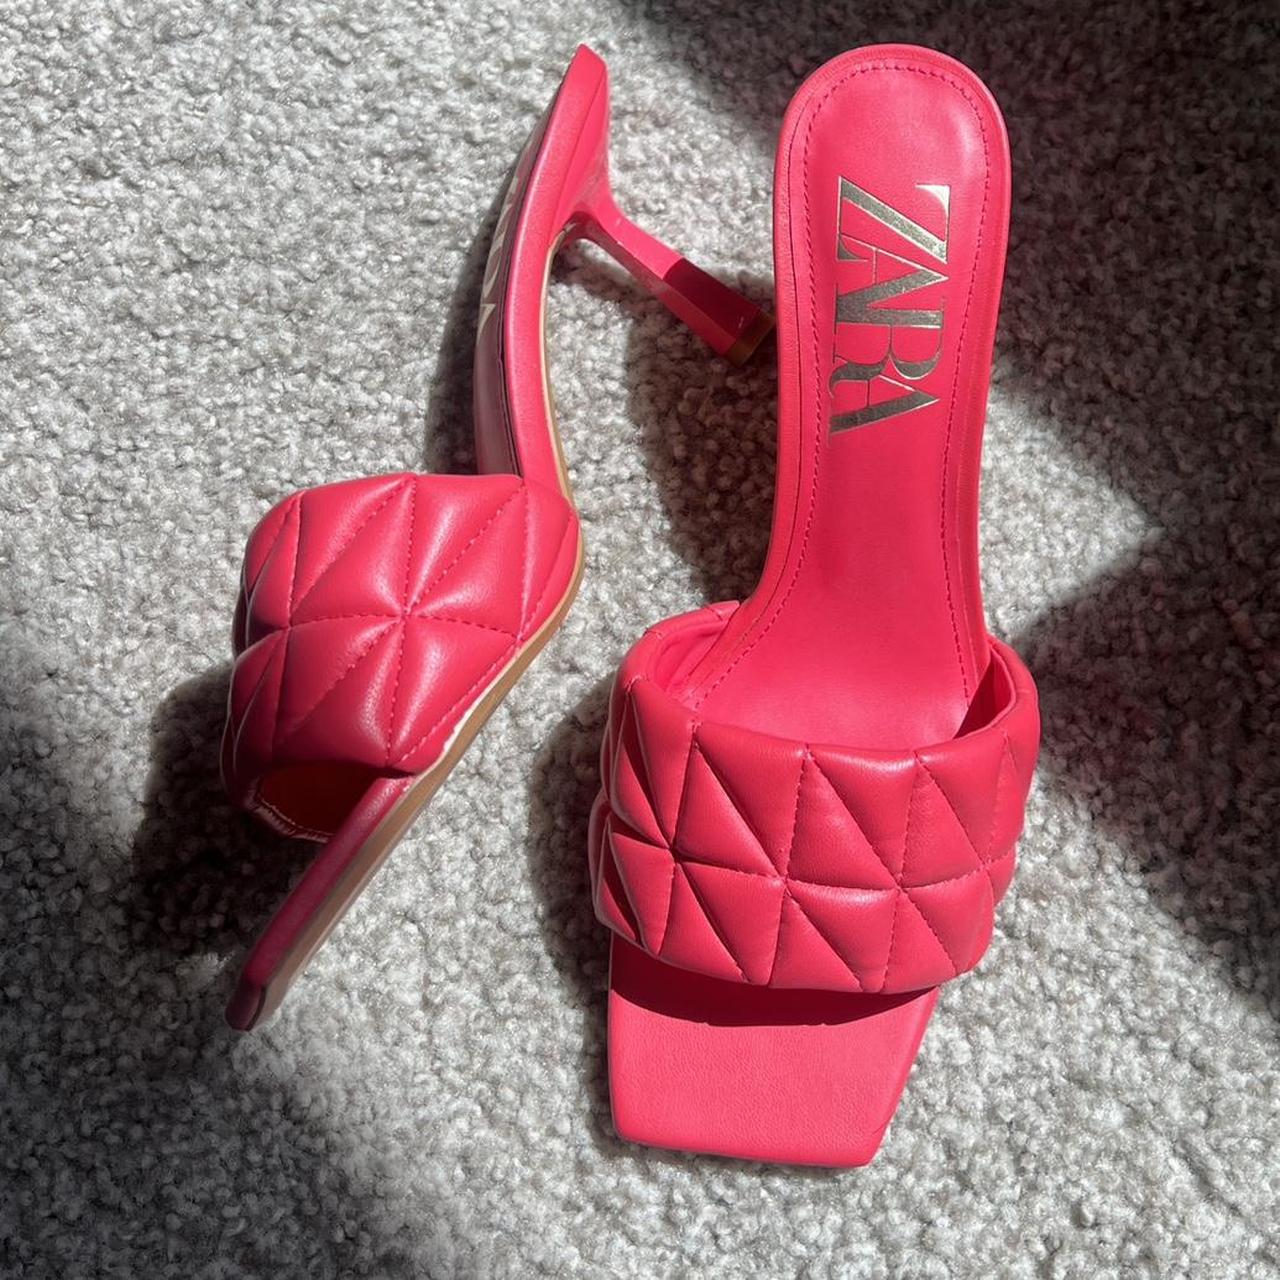 Zara hot pink mules - Depop